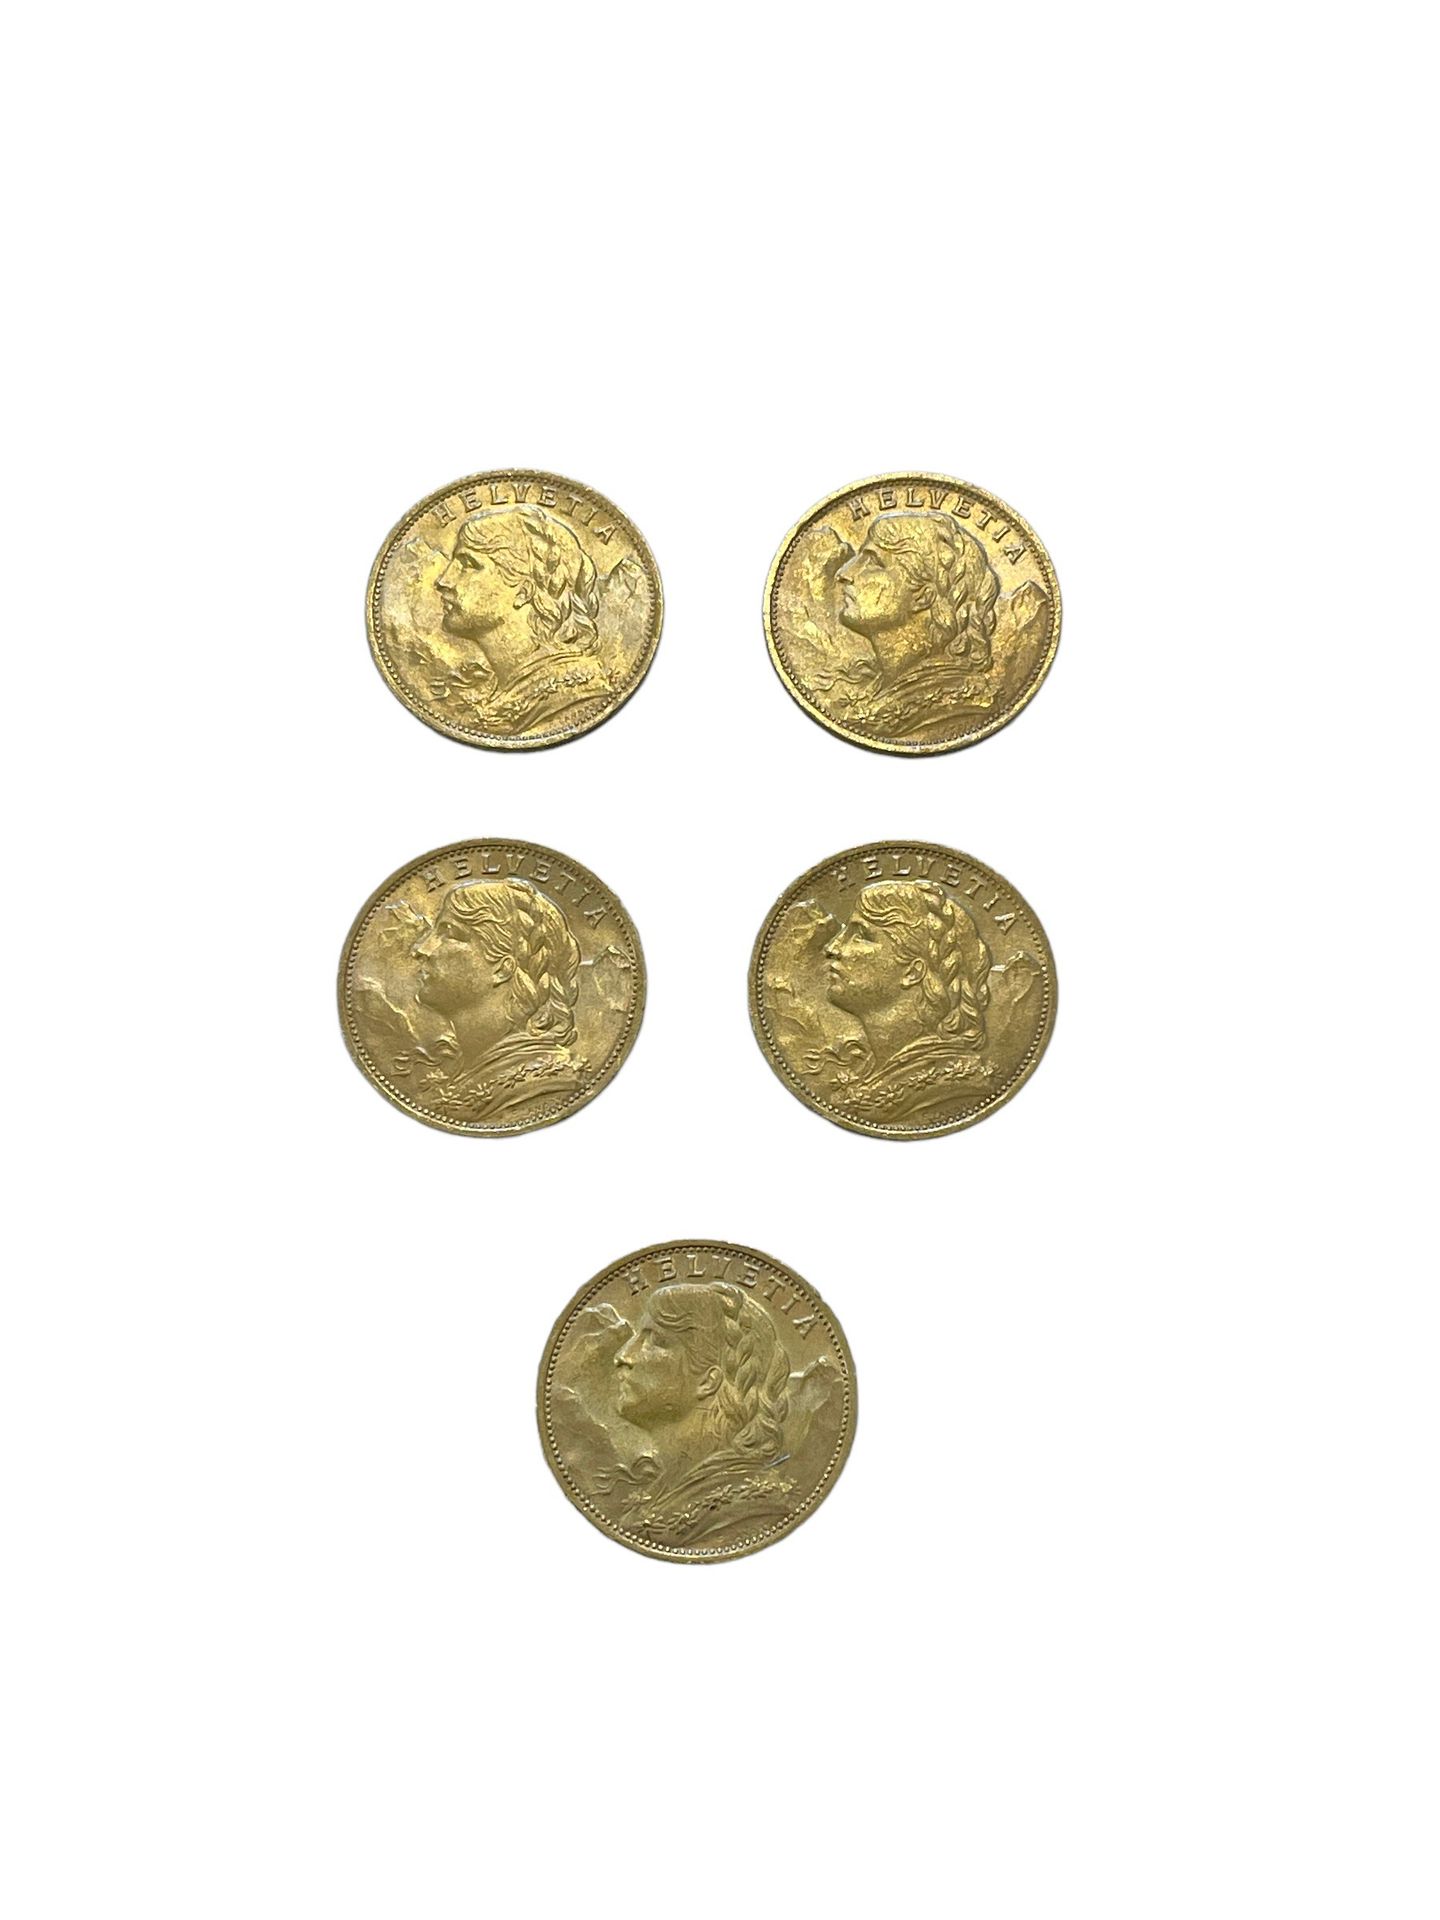 Null SUISSE
5 pièces 20 francs or
Poids : 32.2 g